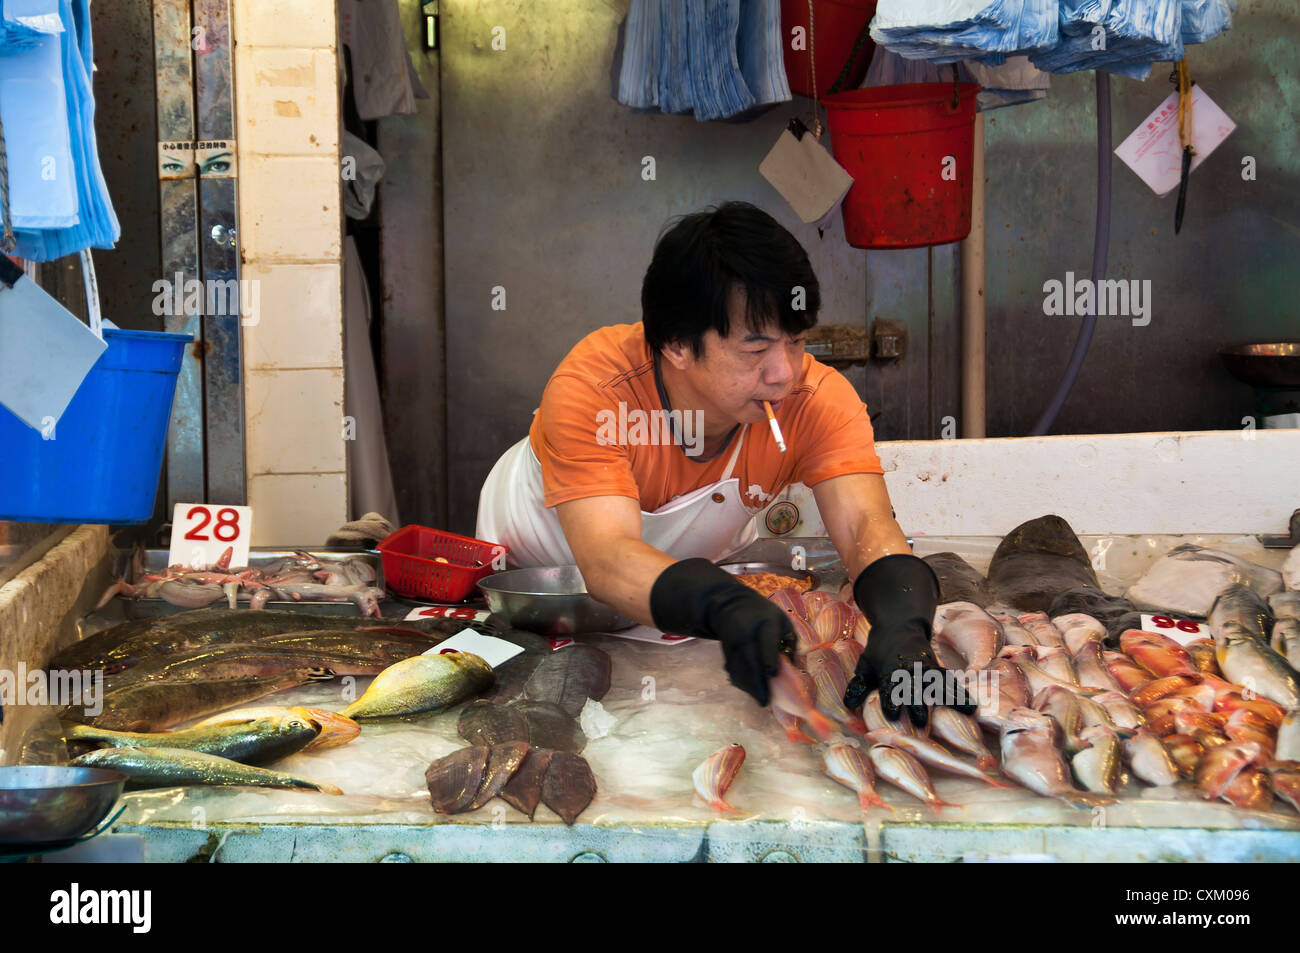 Fishmonger smoking on the job at a Hong Kong wet market Stock Photo